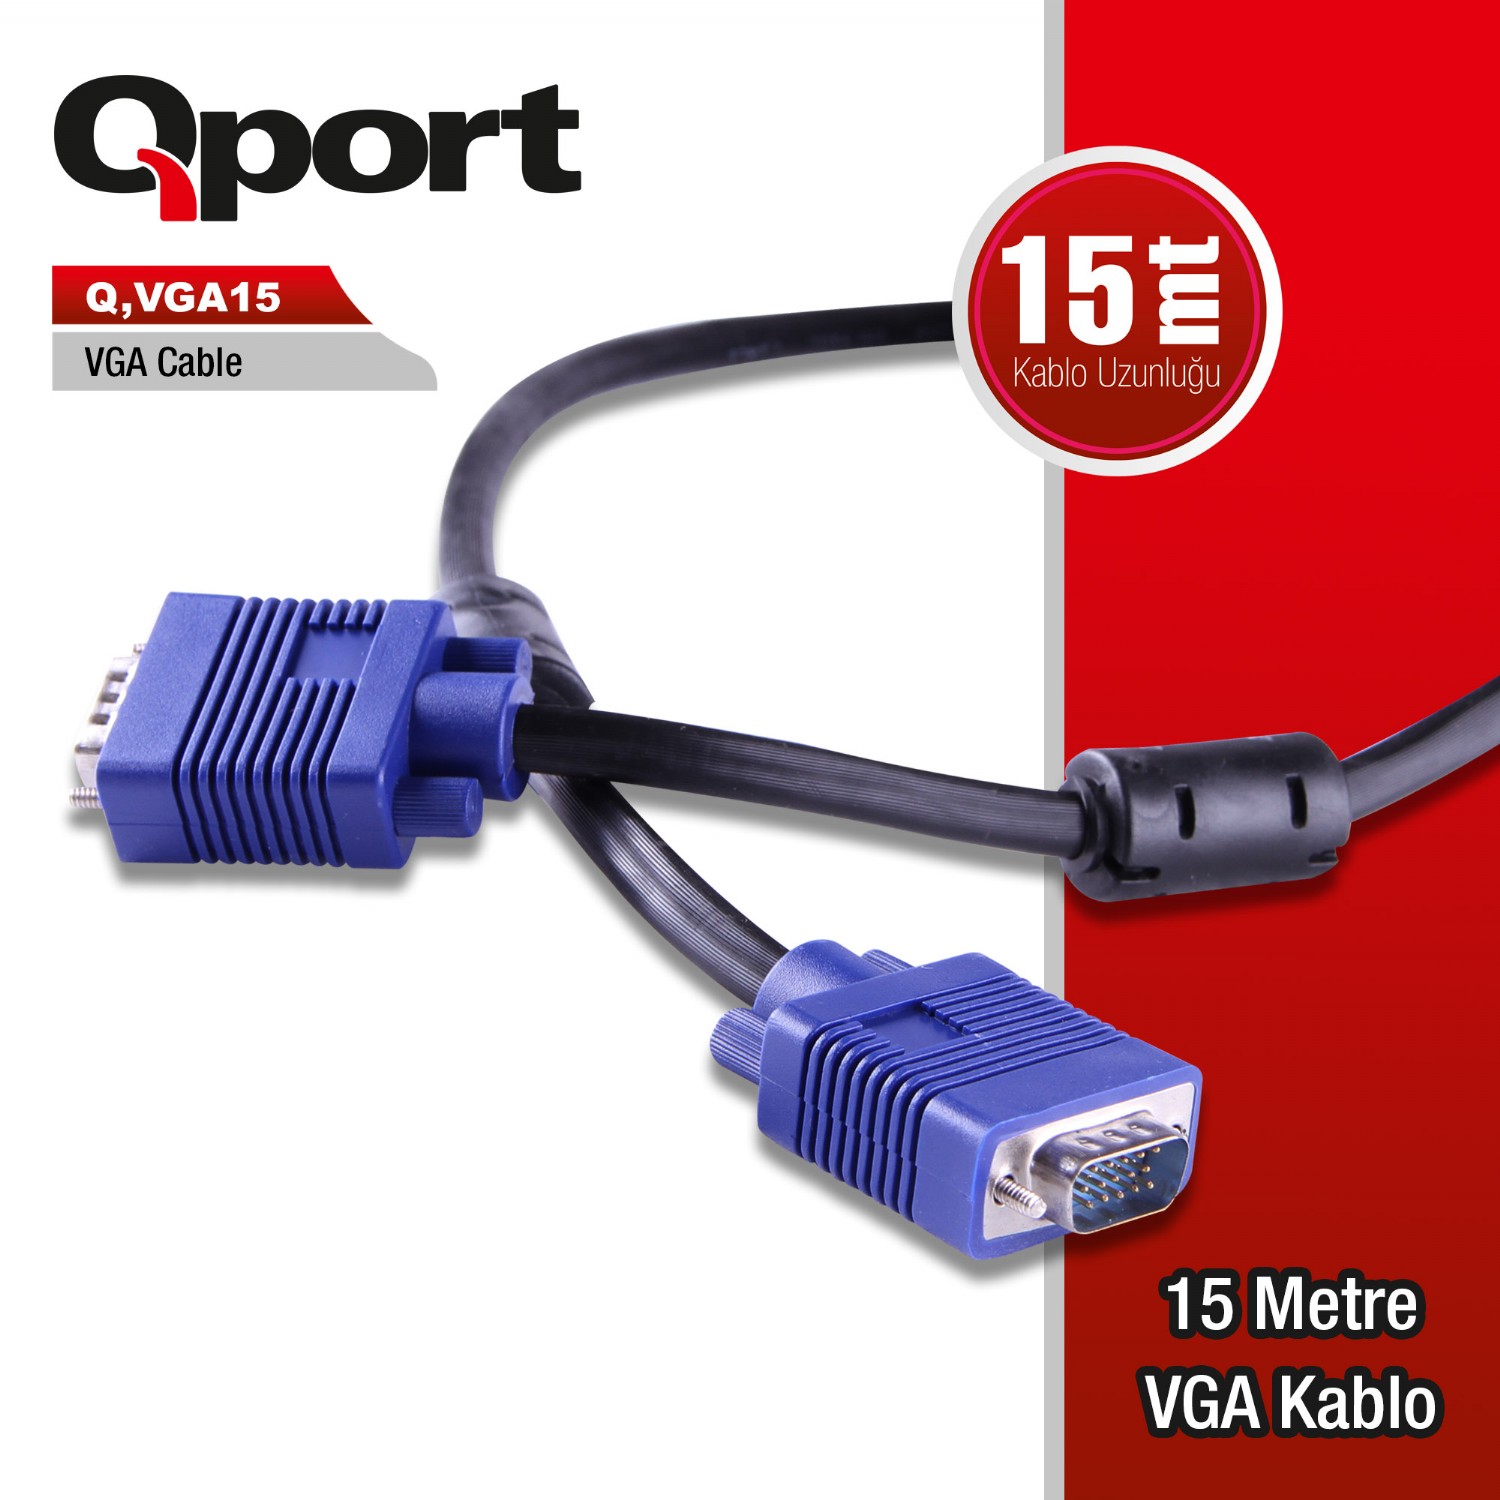 Q-VGA15